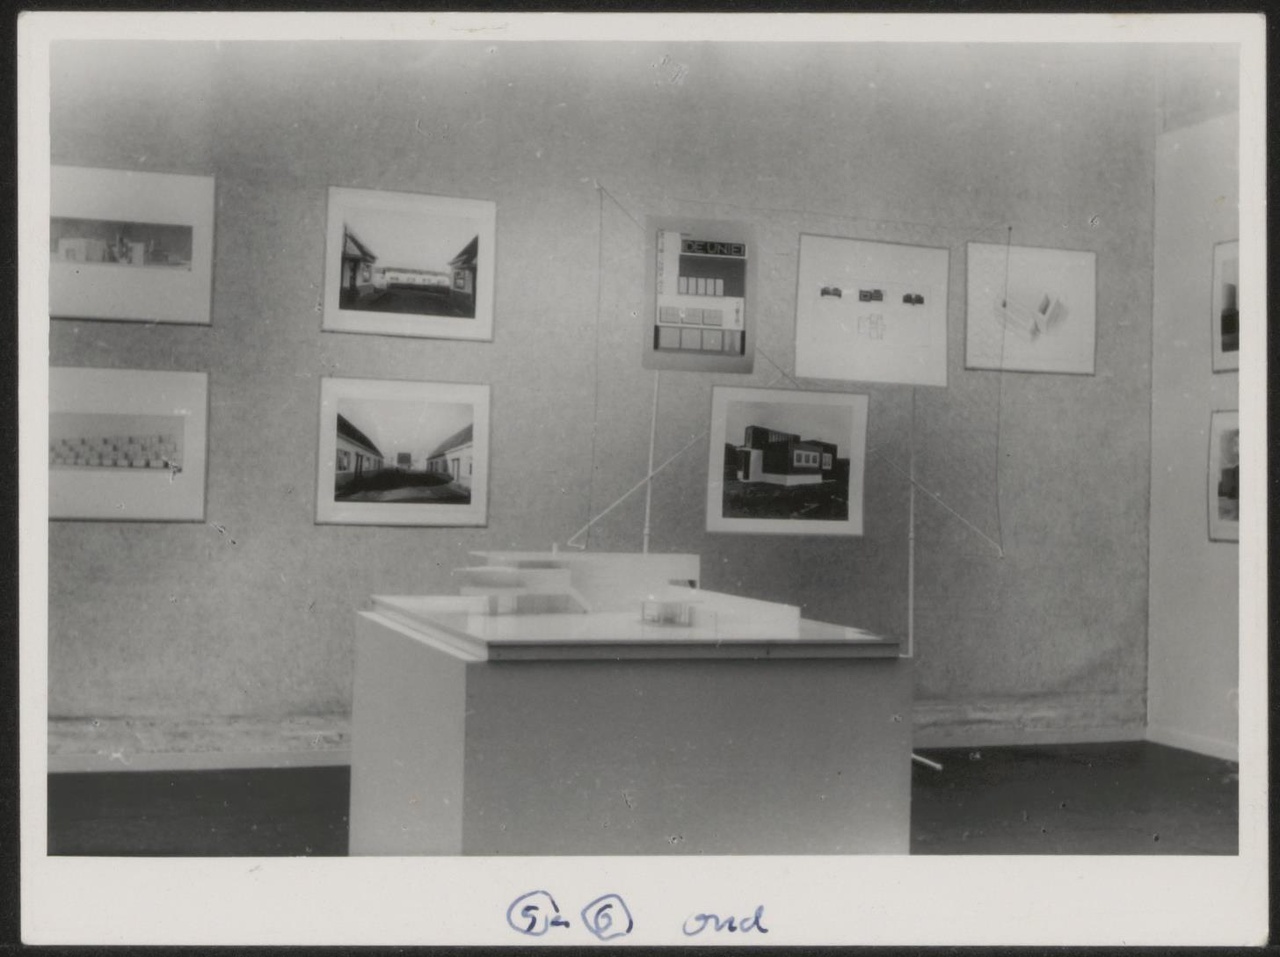 Afbeelding van tentoonstelling De Stijl SMA, 1951, zaal 1, wand Oud met witte maquette